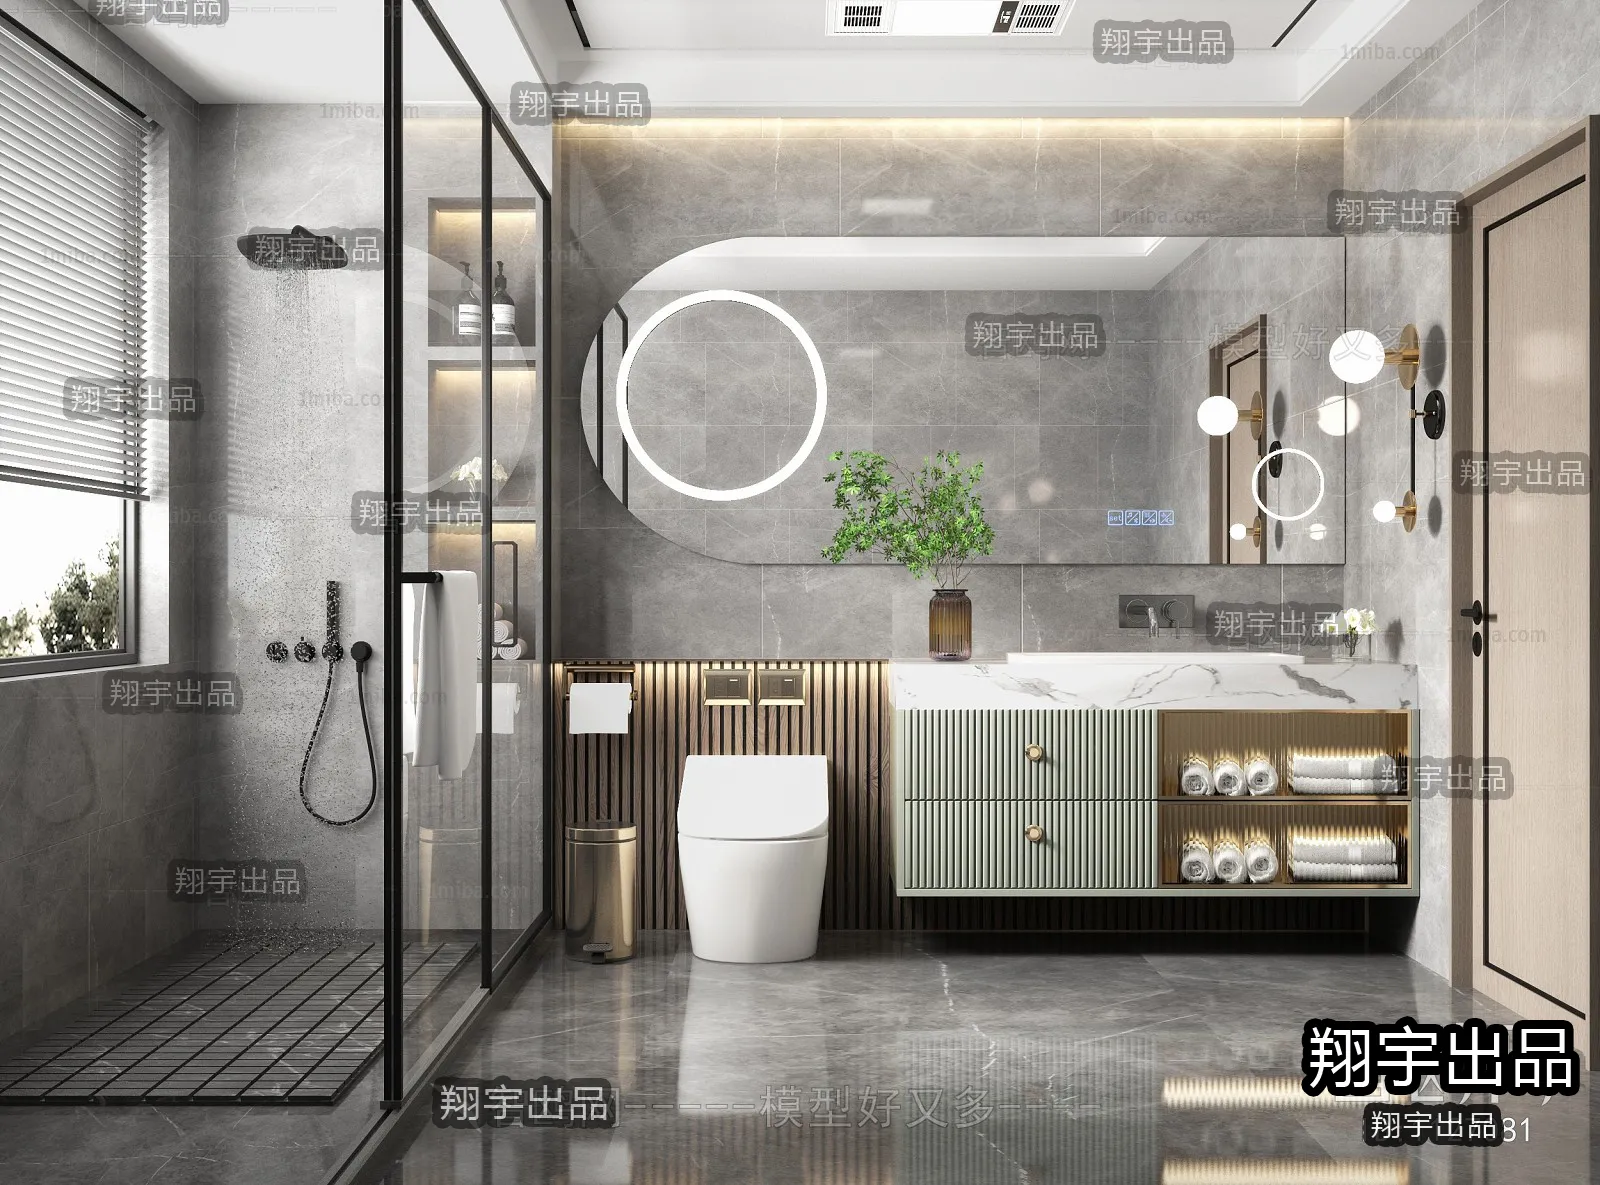 Bathroom – Scandinavian architecture – 003